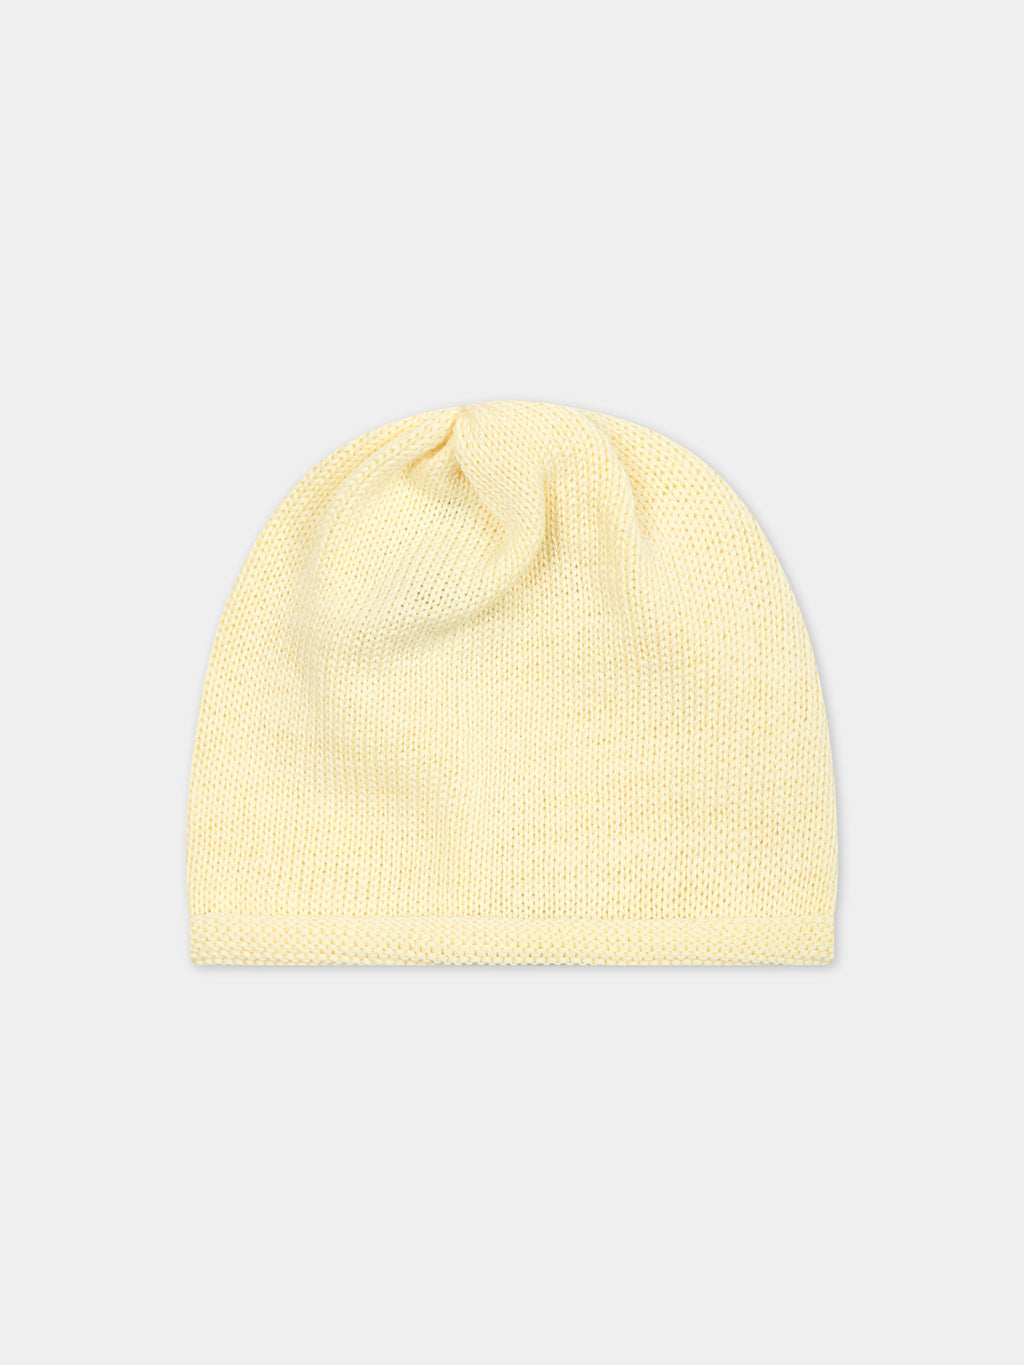 Bonnet jaune pour bébé enfants